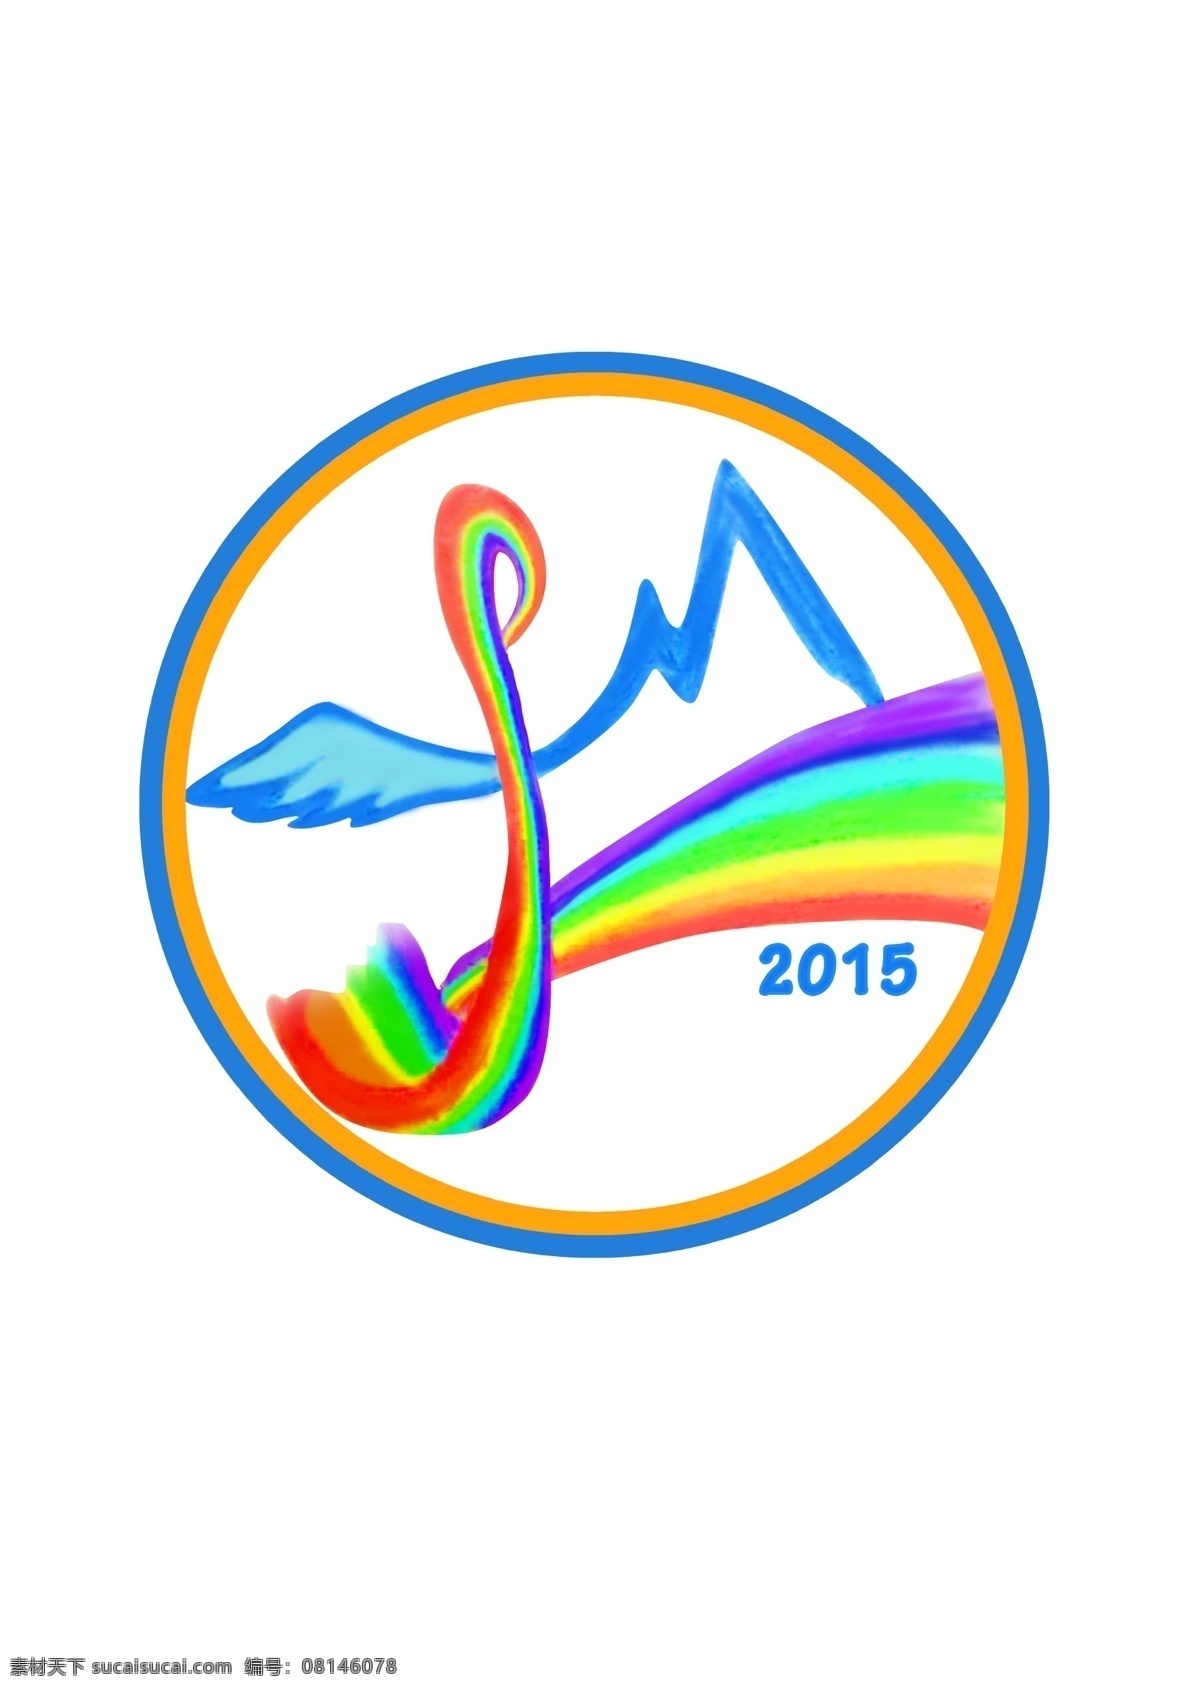 彩虹 标志 logo 翅膀 七色彩虹 logo设计